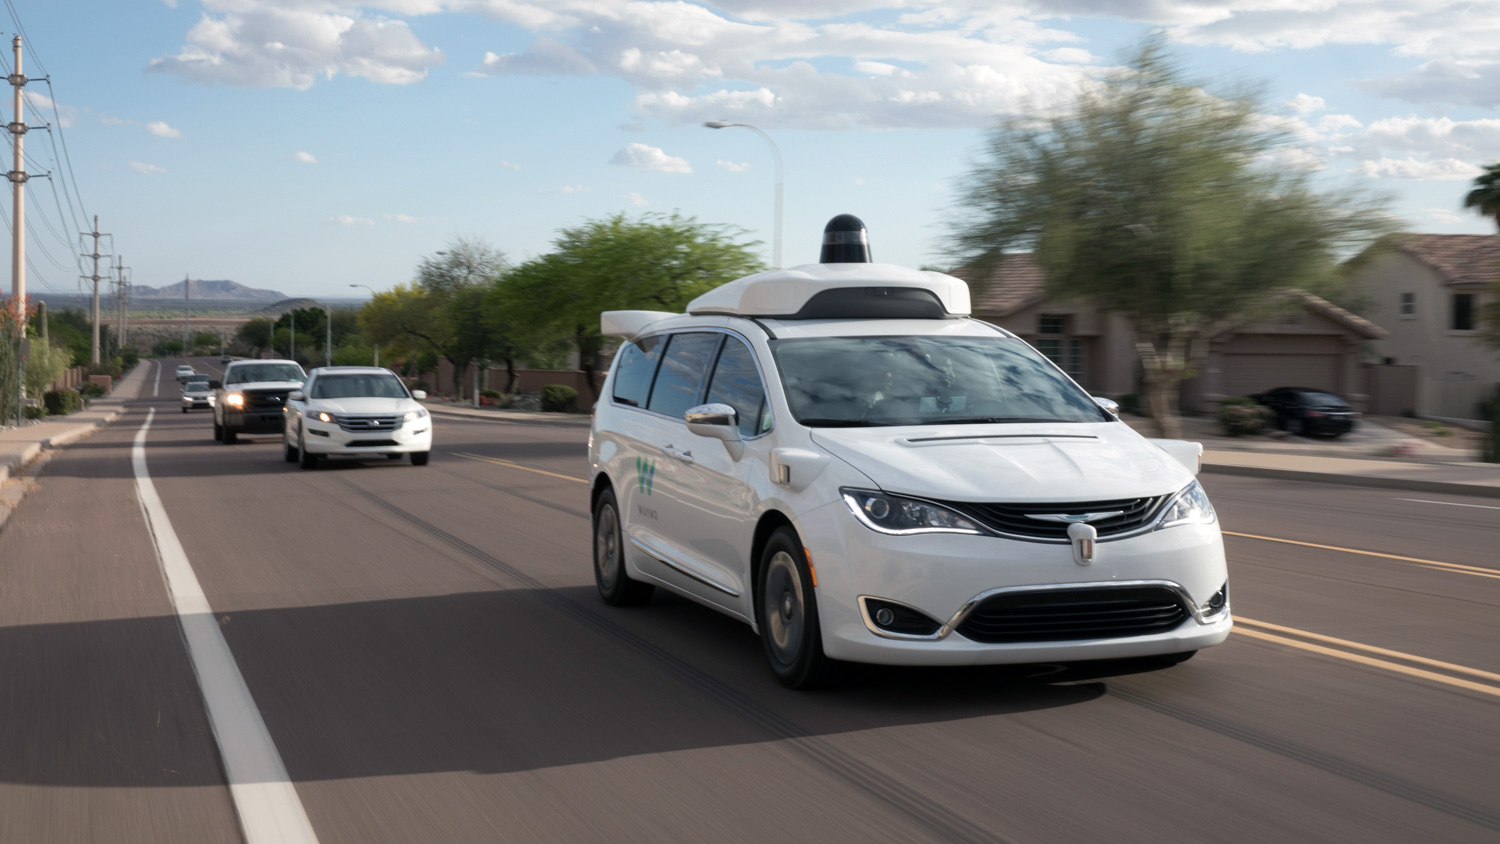 Autonomous vehicle driving down a road